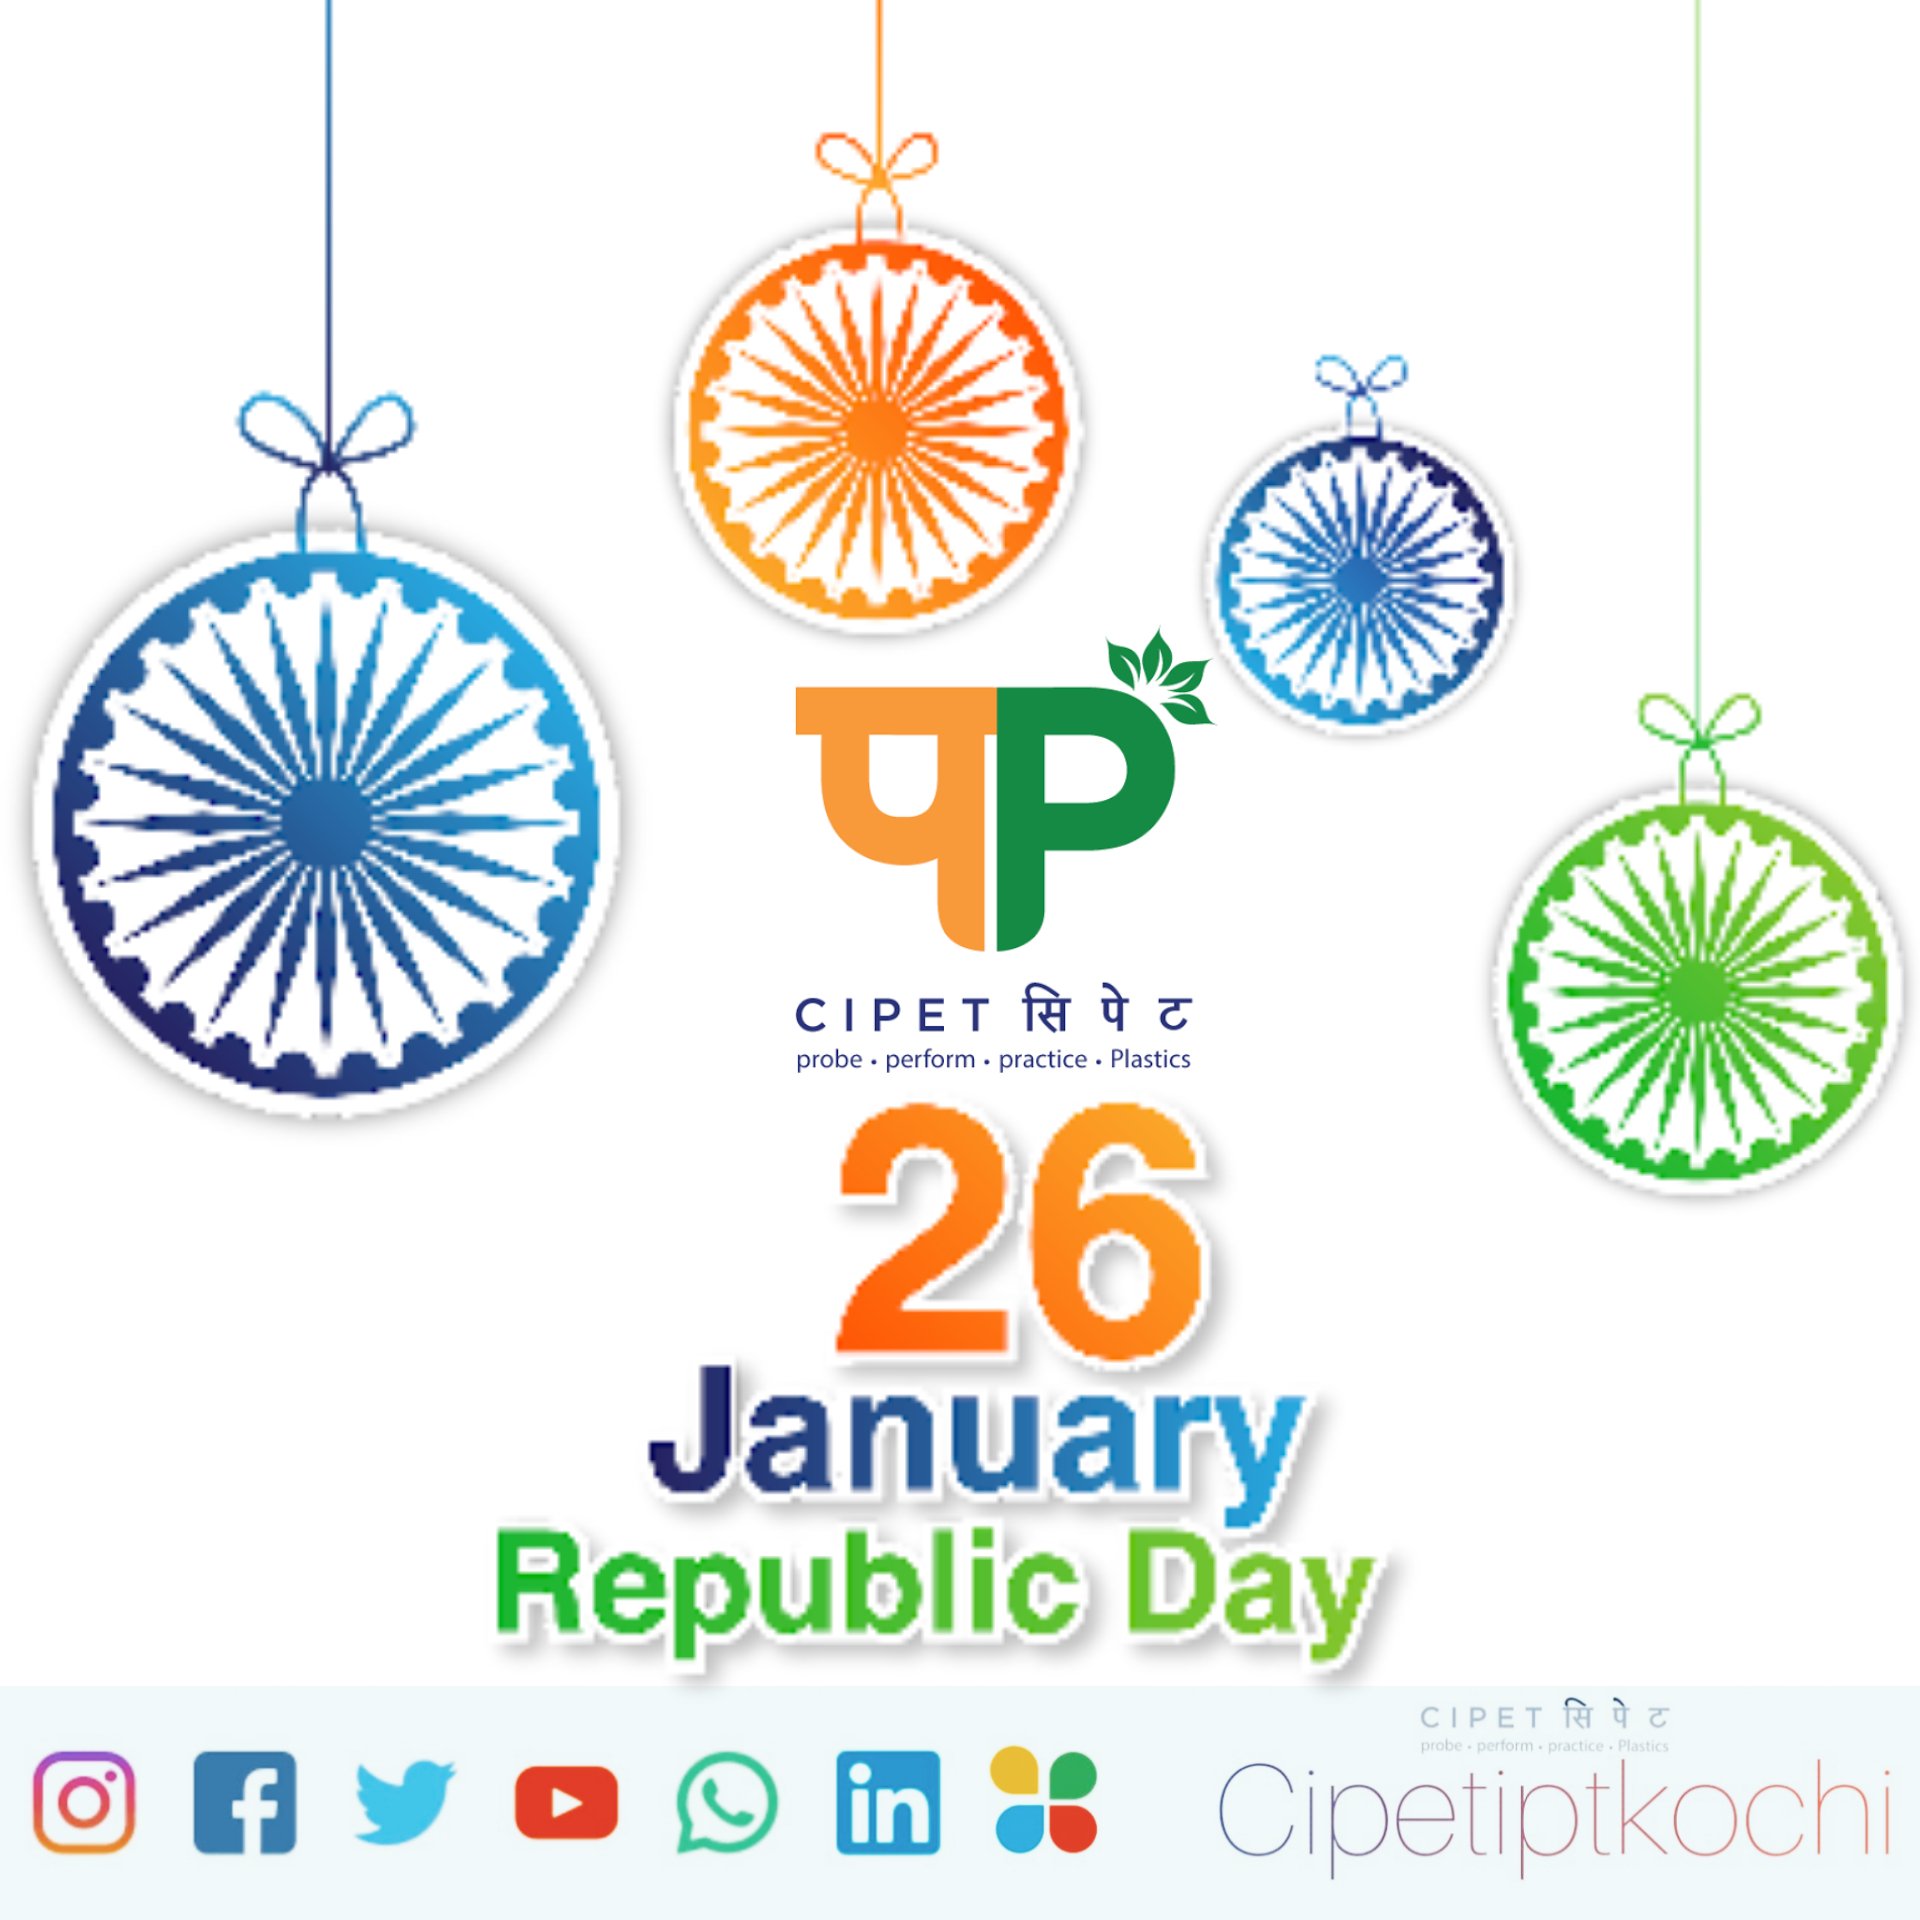 Chào đón năm 2022 cùng ngày cộng hòa của Ấn Độ. Hãy lan tỏa tinh thần lạc quan và hy vọng cho năm mới với những hình ảnh tươi mới và đầy sức sống. Cảm nhận không khí vô cùng sôi động và đầy tiếng cười trong ngày cộng hòa sắp tới.